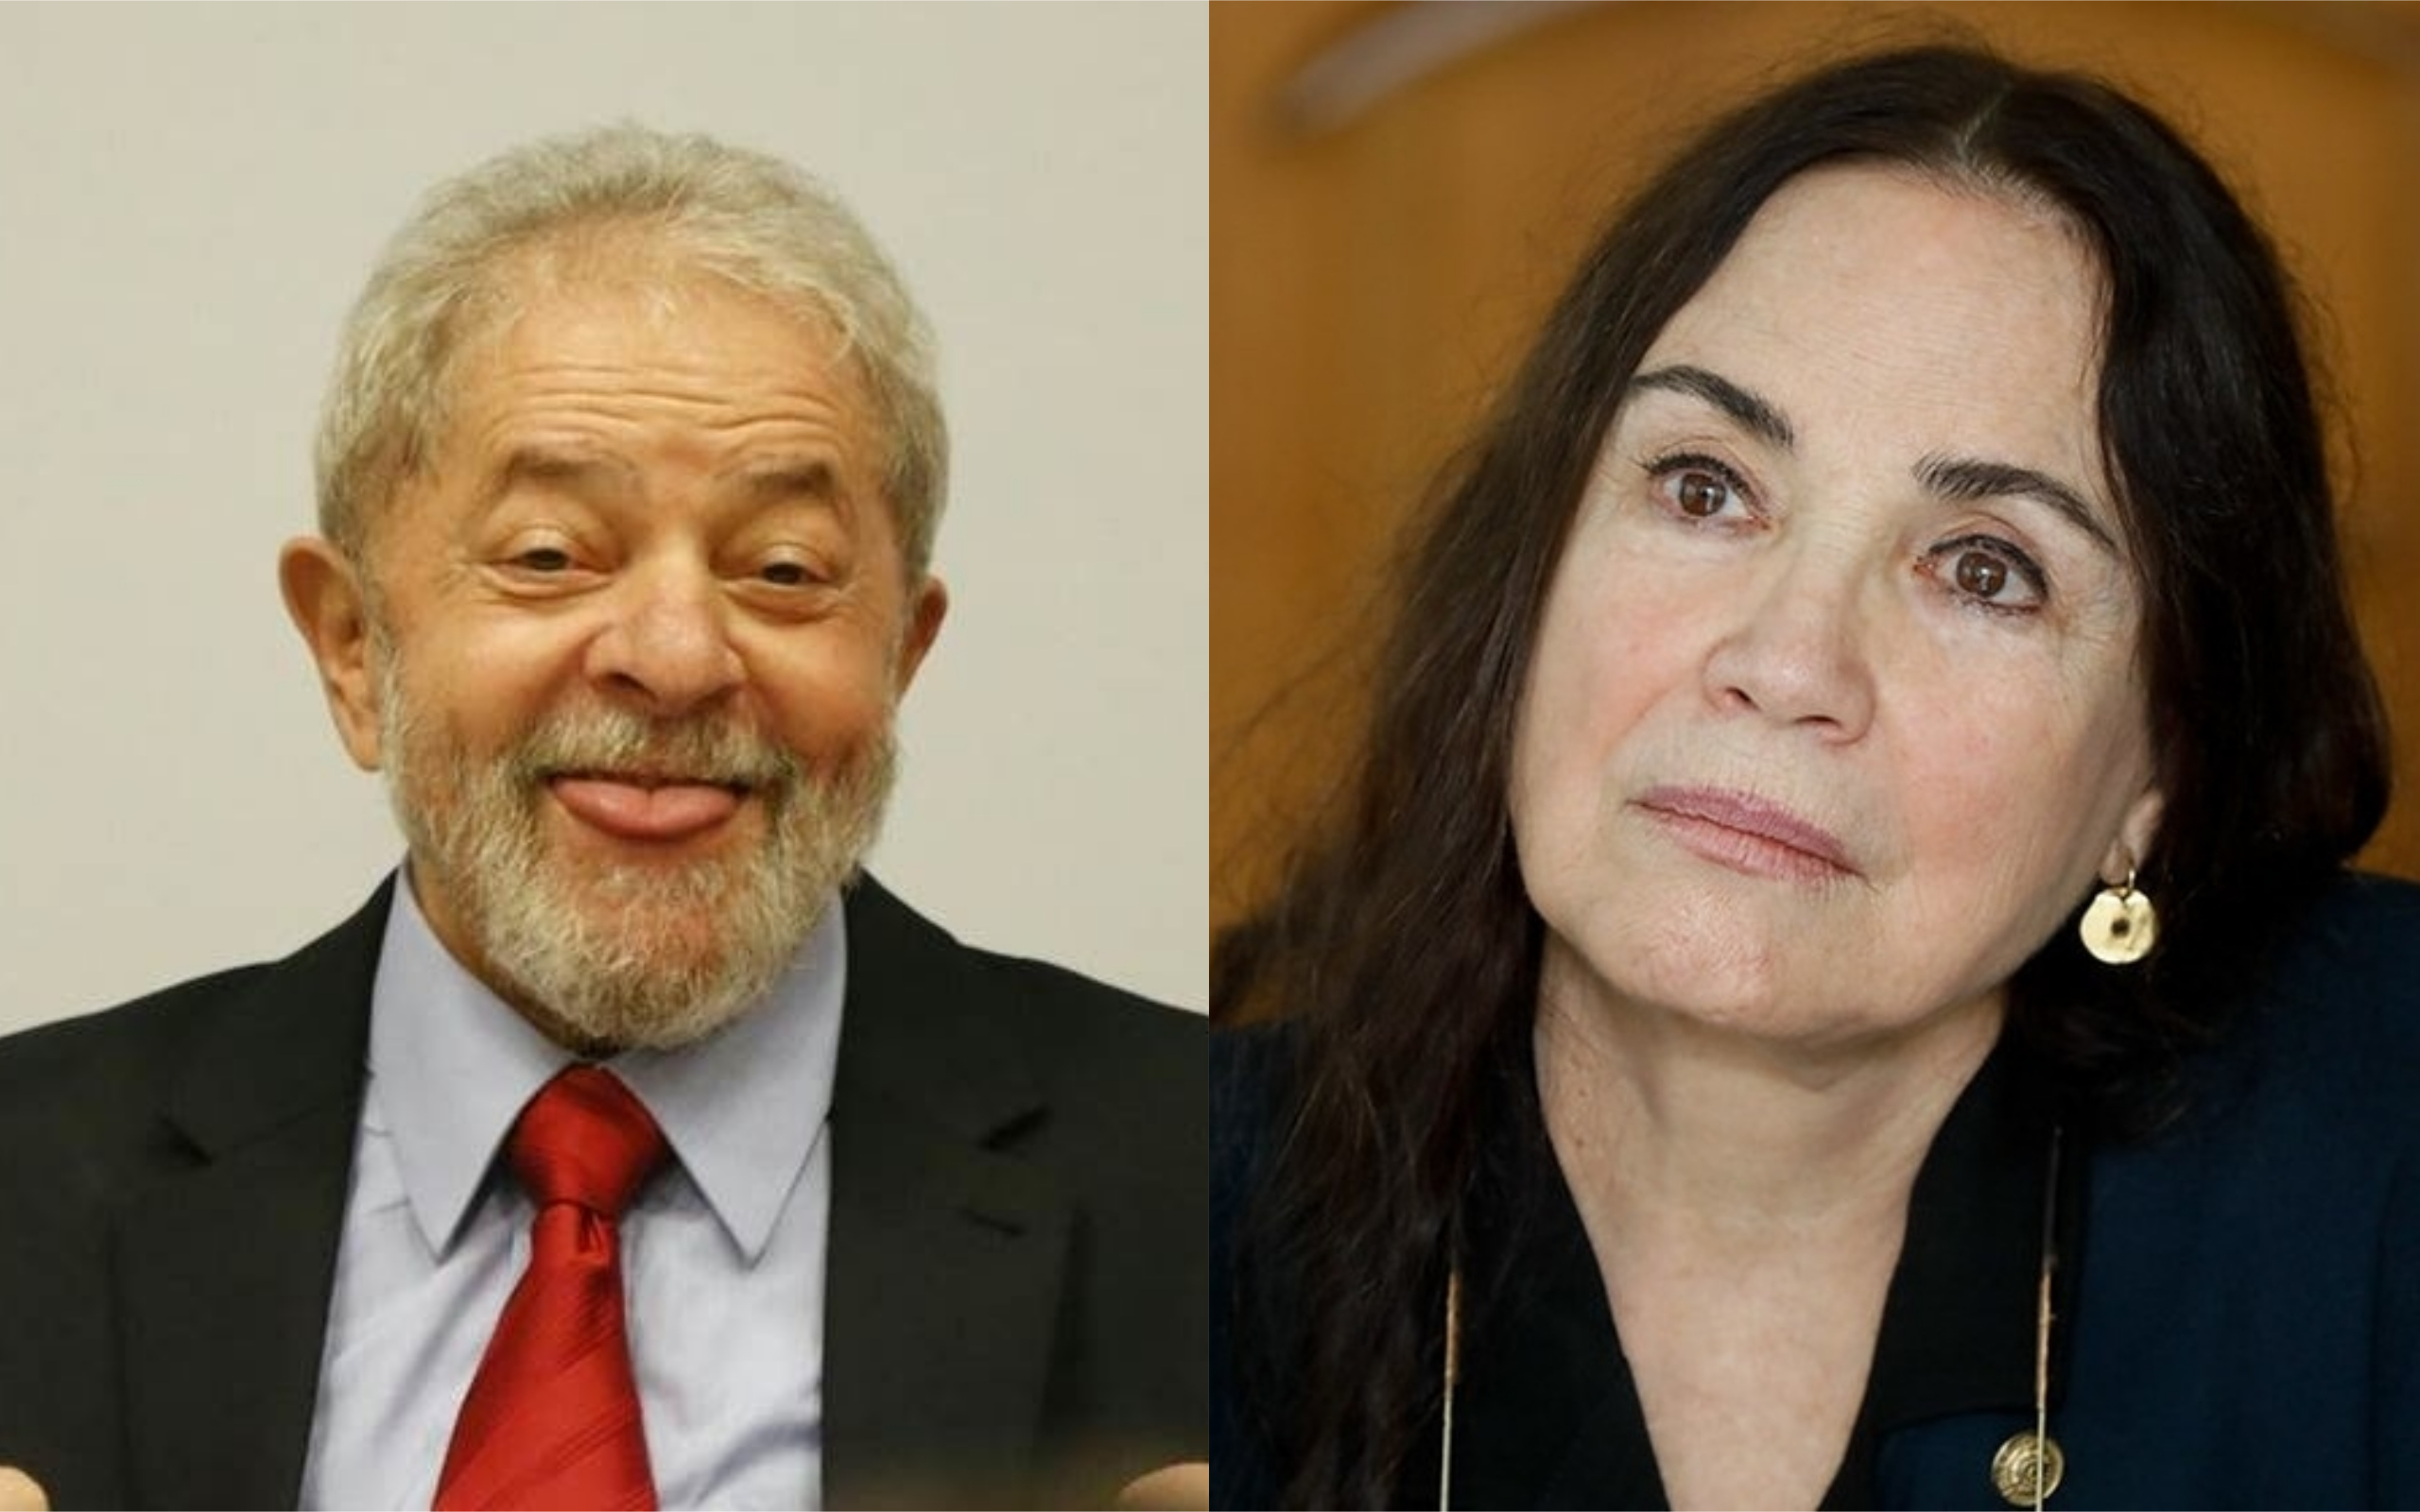 Regina Duarte é condenada após divulgar informação falsa sobre Marisa Letícia, então esposa de Lula (Foto: Reprodução)